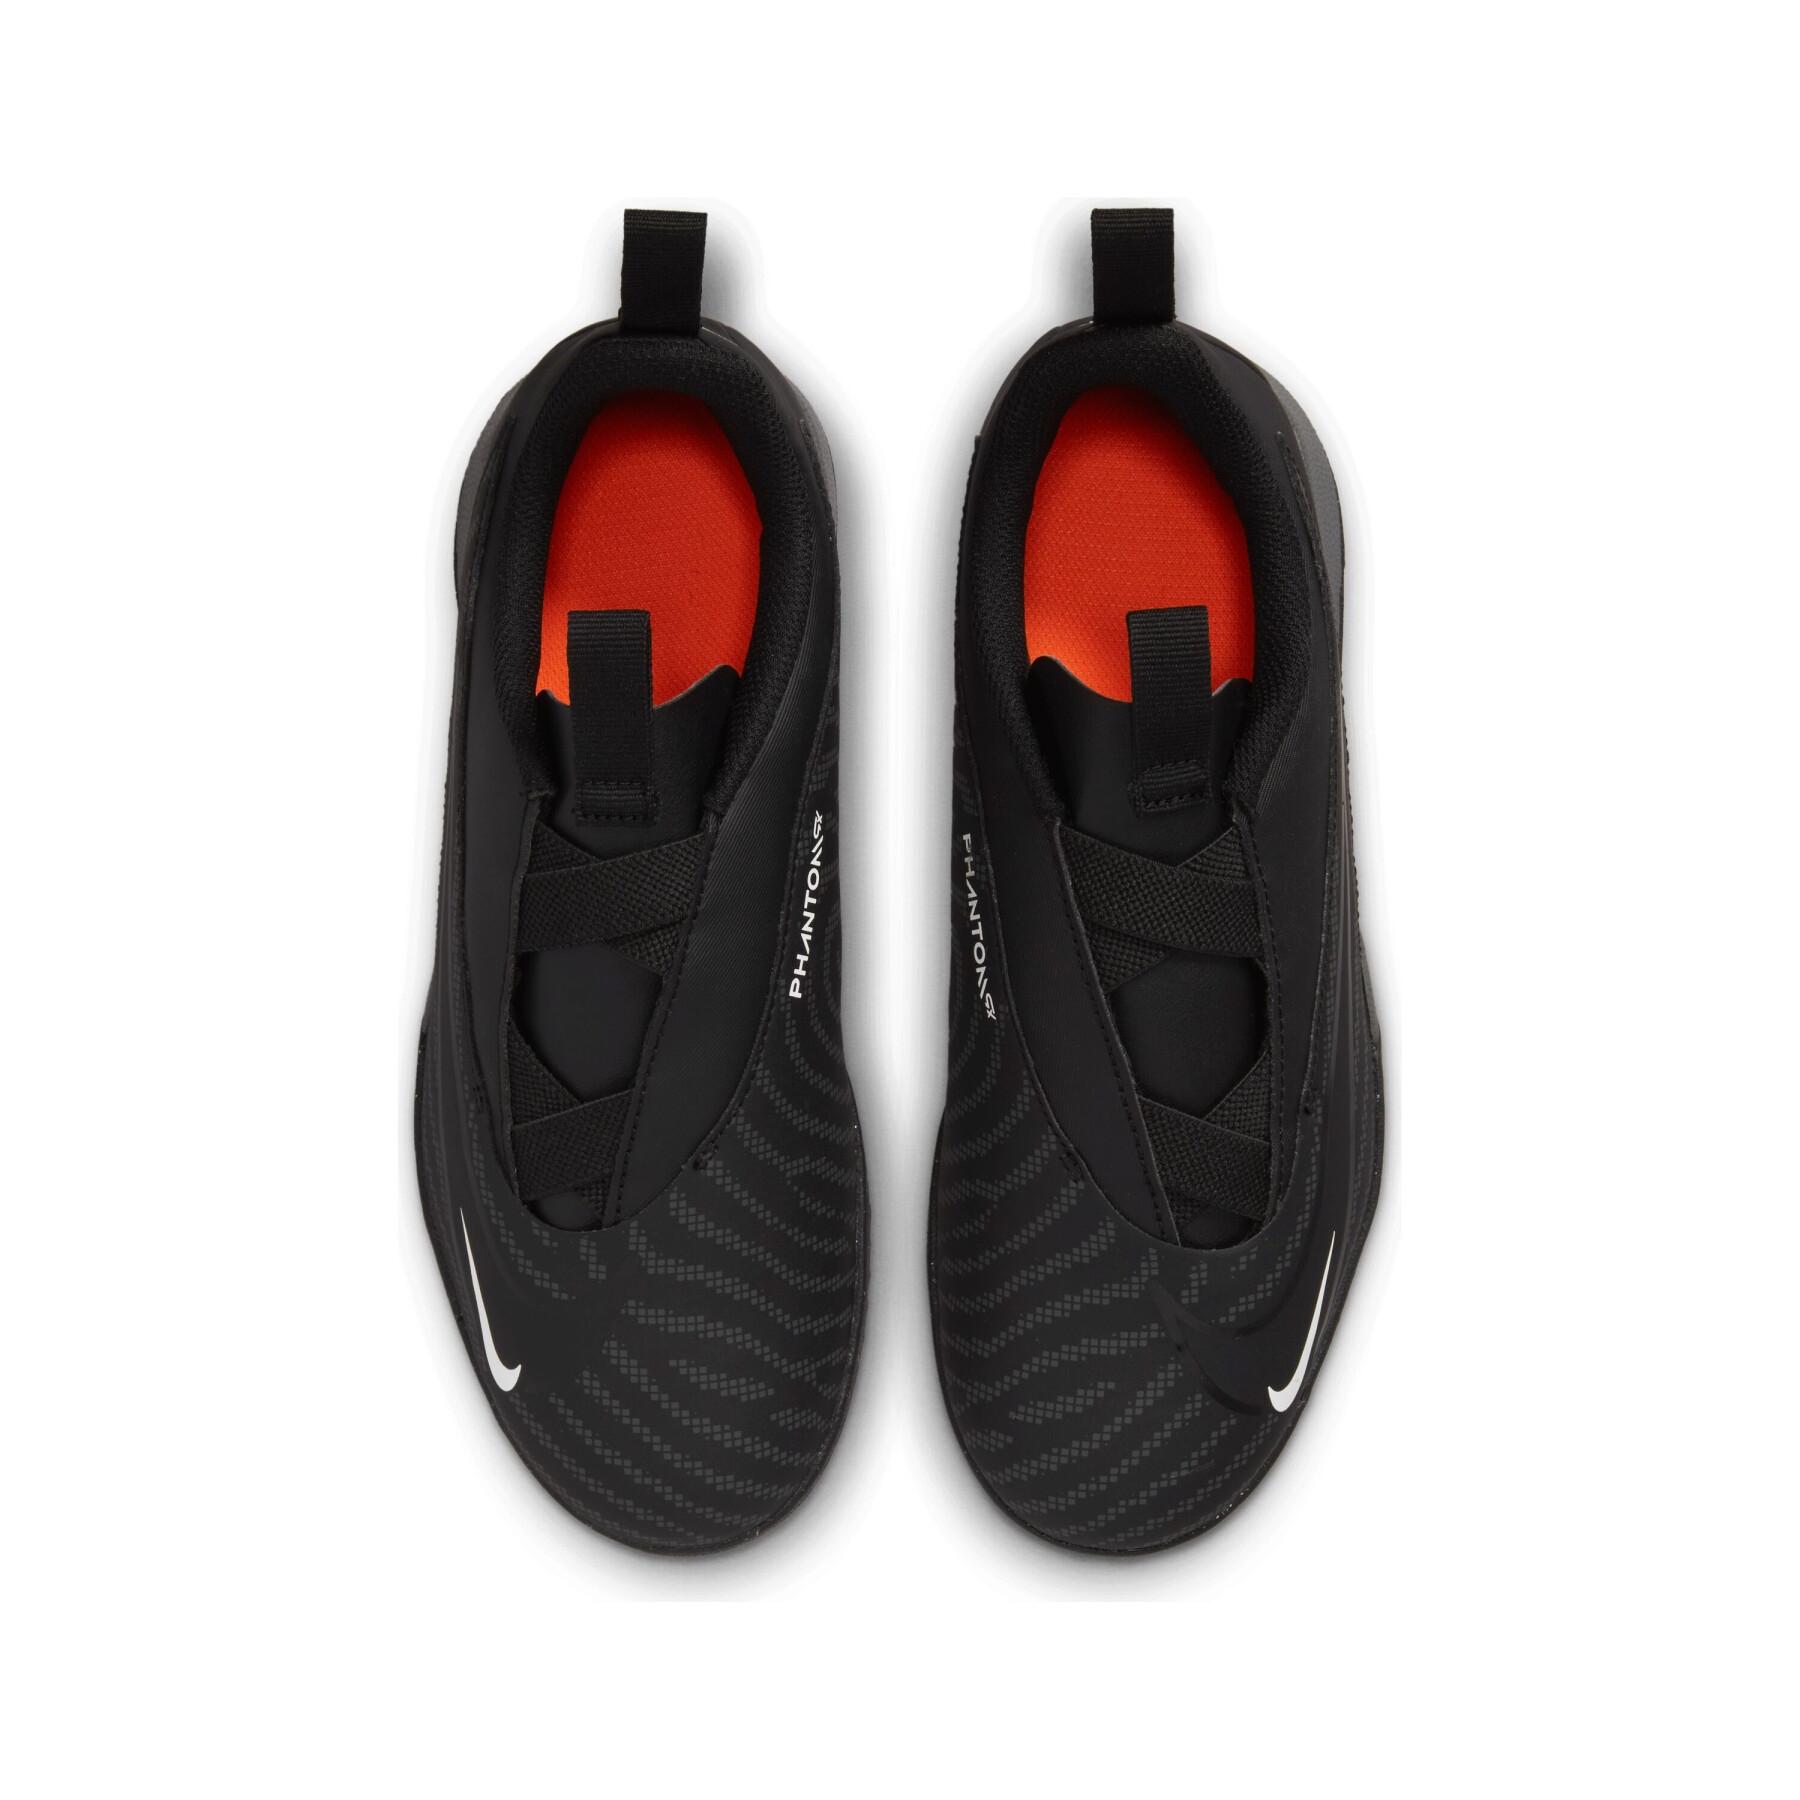 Dziecięce buty piłkarskie Nike Phantom GX Academy IC - Black Pack